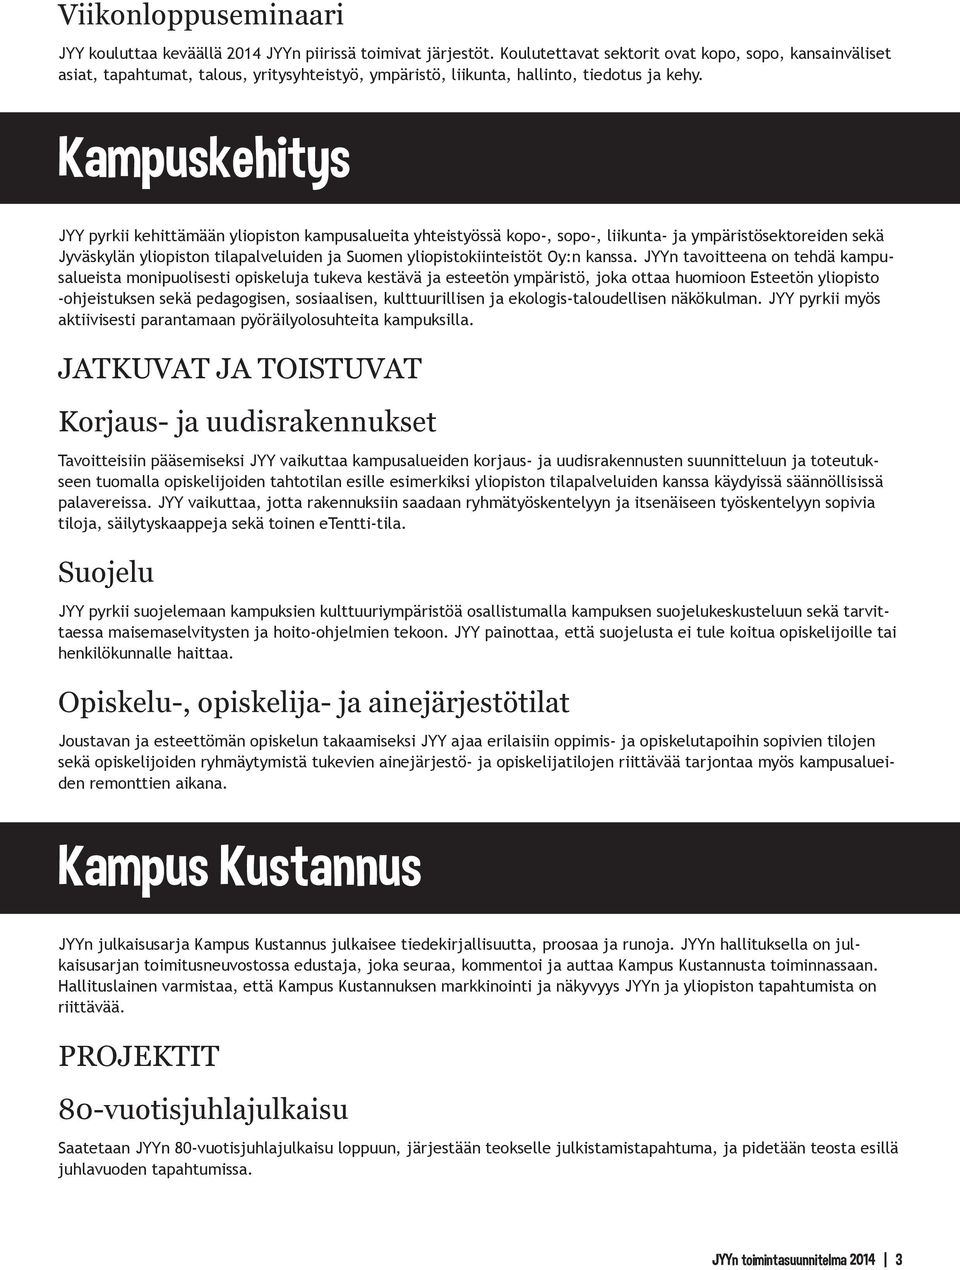 Kampuskehitys JYY pyrkii kehittämään yliopiston kampusalueita yhteistyössä kopo-, sopo-, liikunta- ja ympäristösektoreiden sekä Jyväskylän yliopiston tilapalveluiden ja Suomen yliopistokiinteistöt